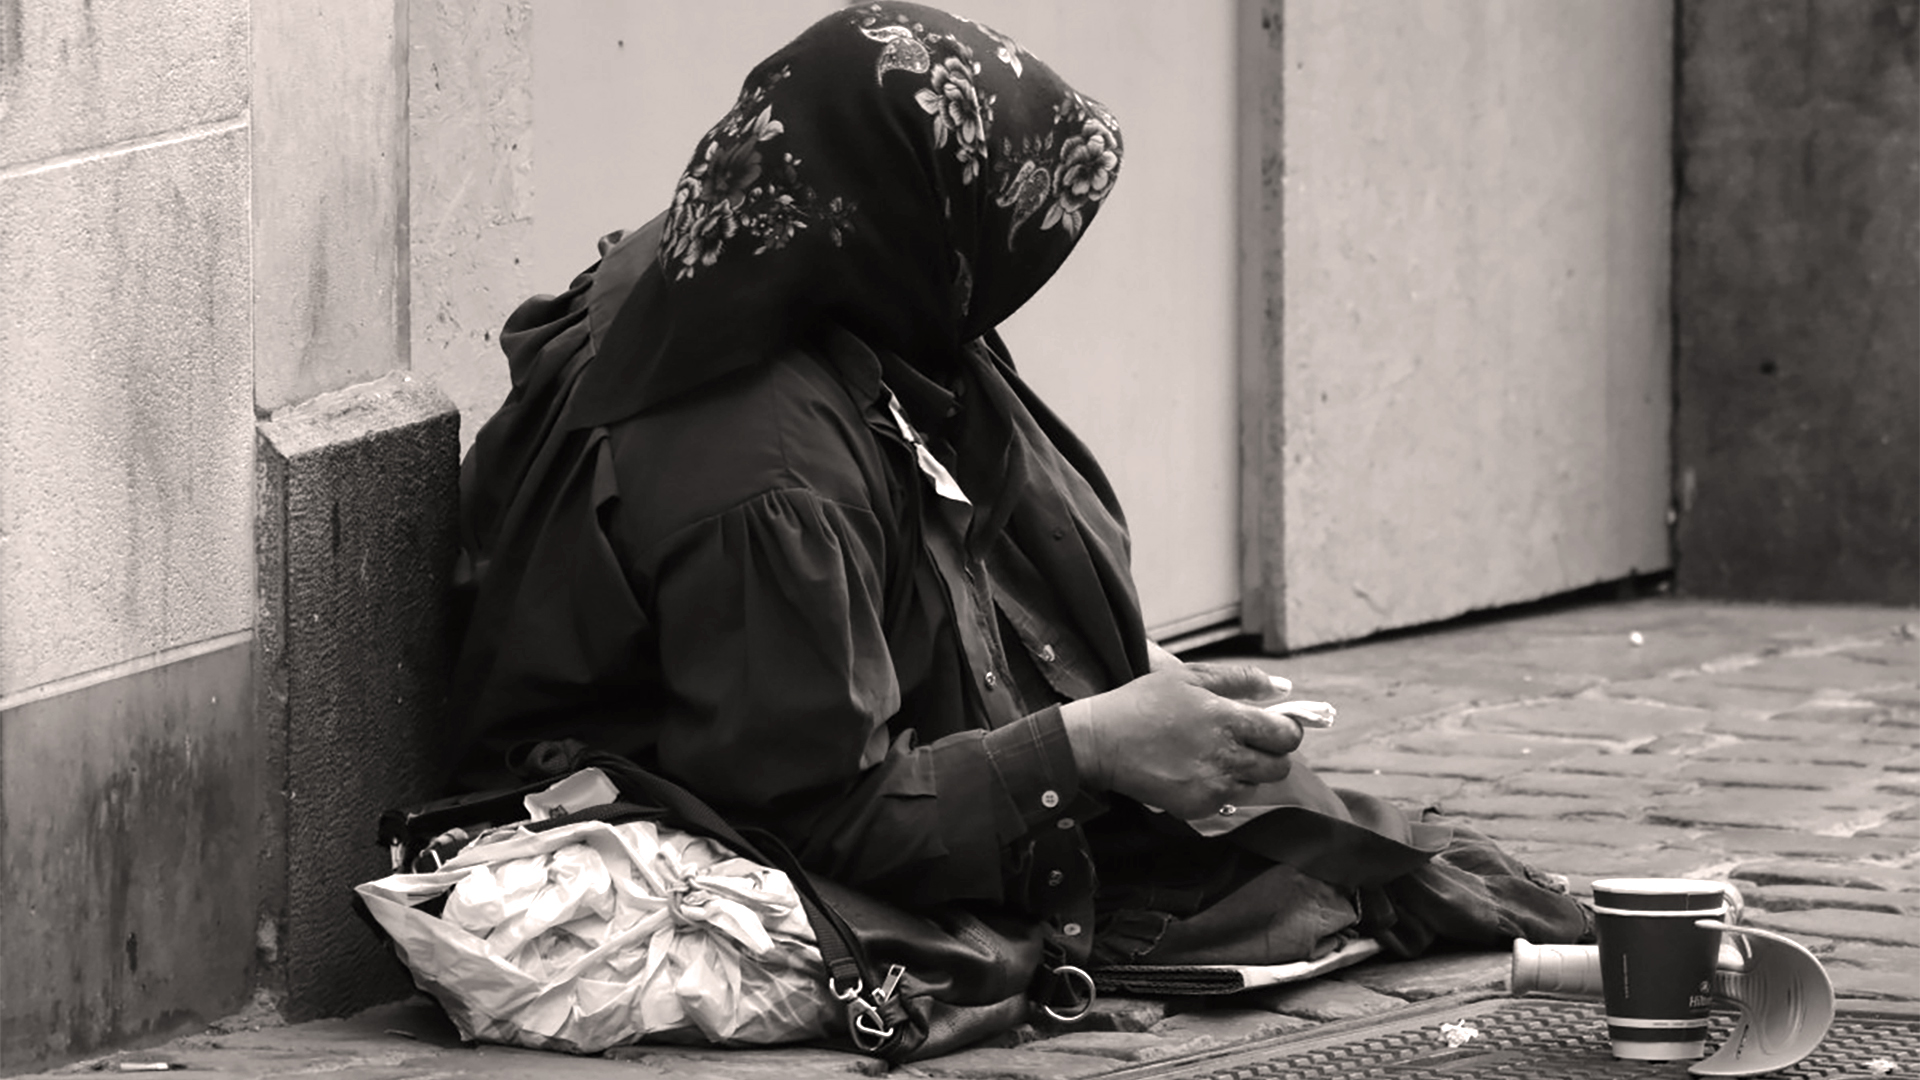 L'Evangile invite à un regard de miséricorde et de compassion envers les mendiants et les plus pauvres | LDD